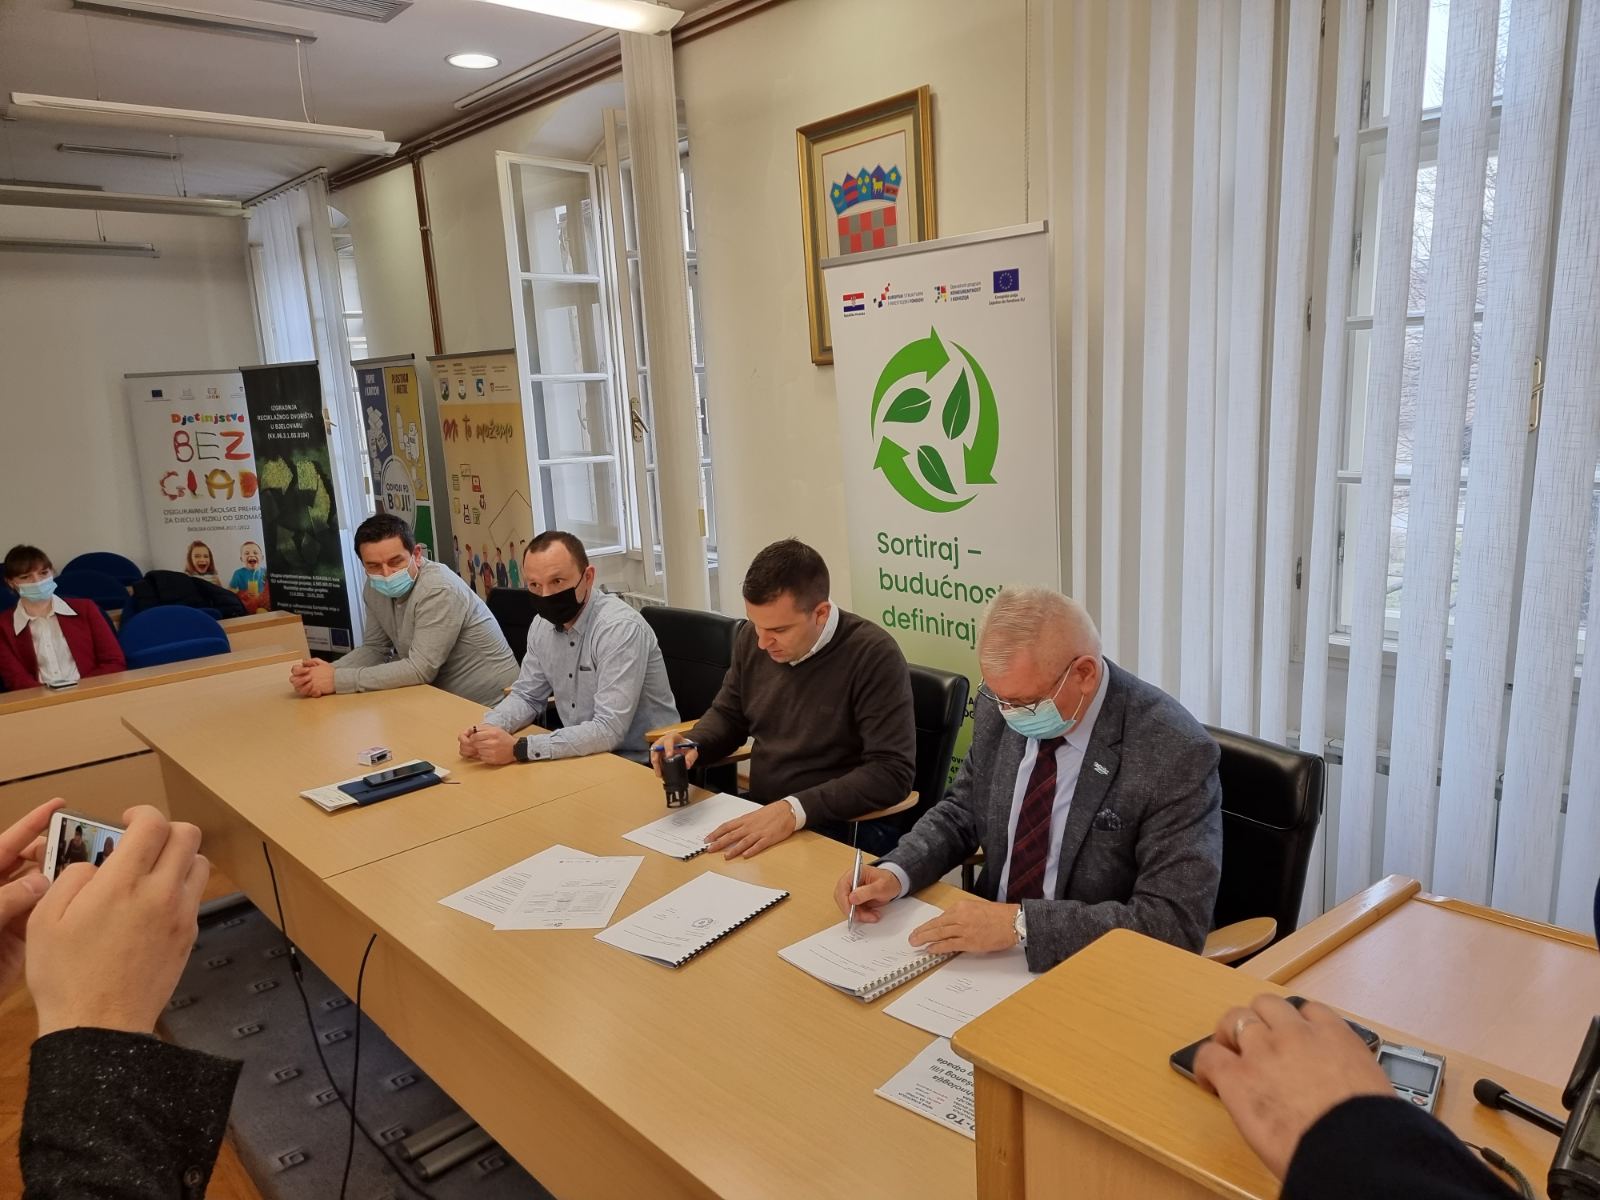 Potpisan ugovor za sortirnicu u Bjelovaru